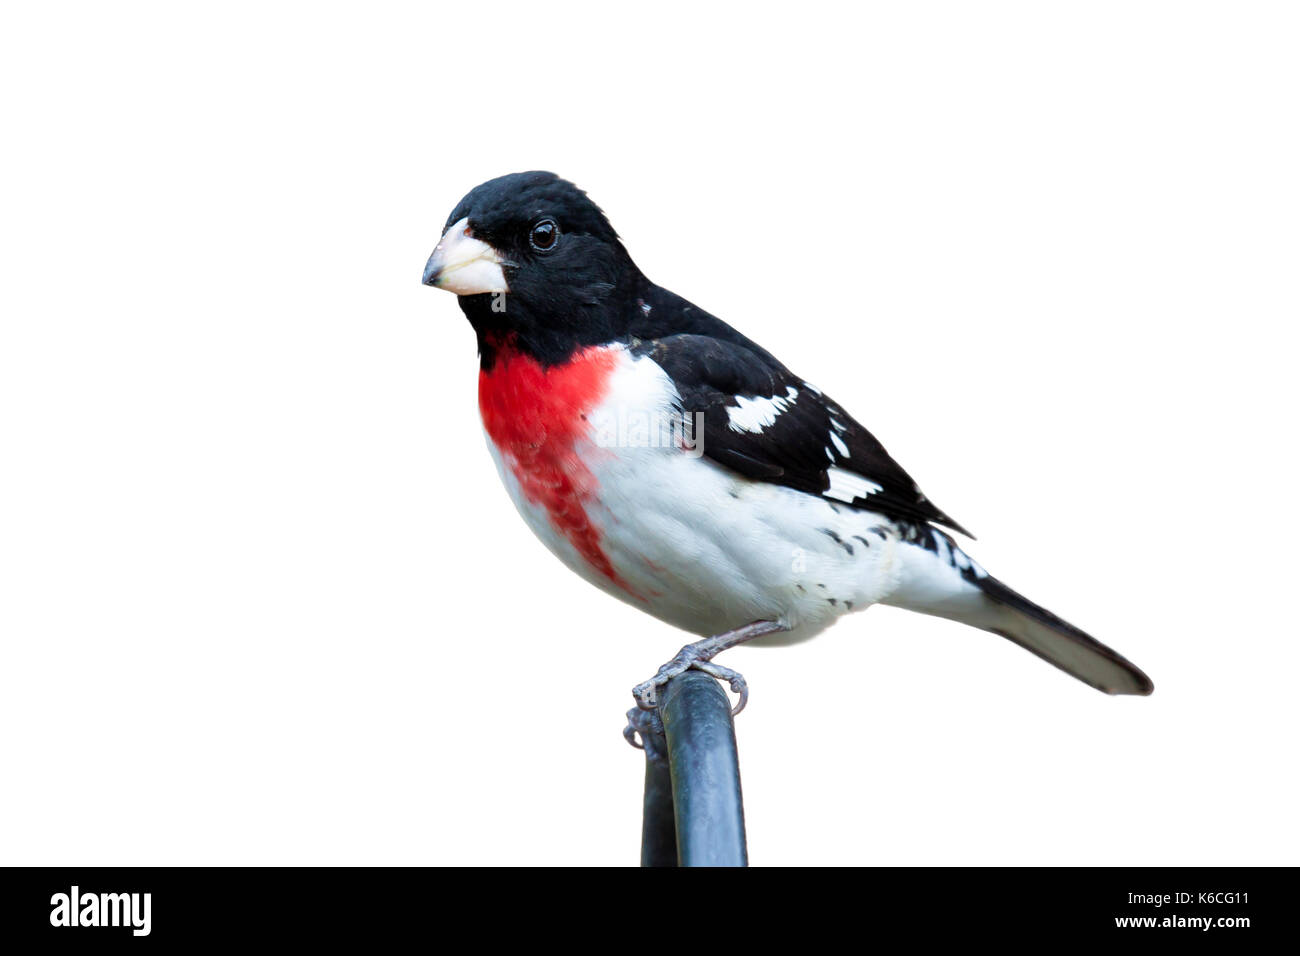 Posado rose breasted grosbeak miradas en la distancia. El pájaro de plumaje rojo brillante, blanco y negro explotó en prominencia. fondo blanco. Foto de stock